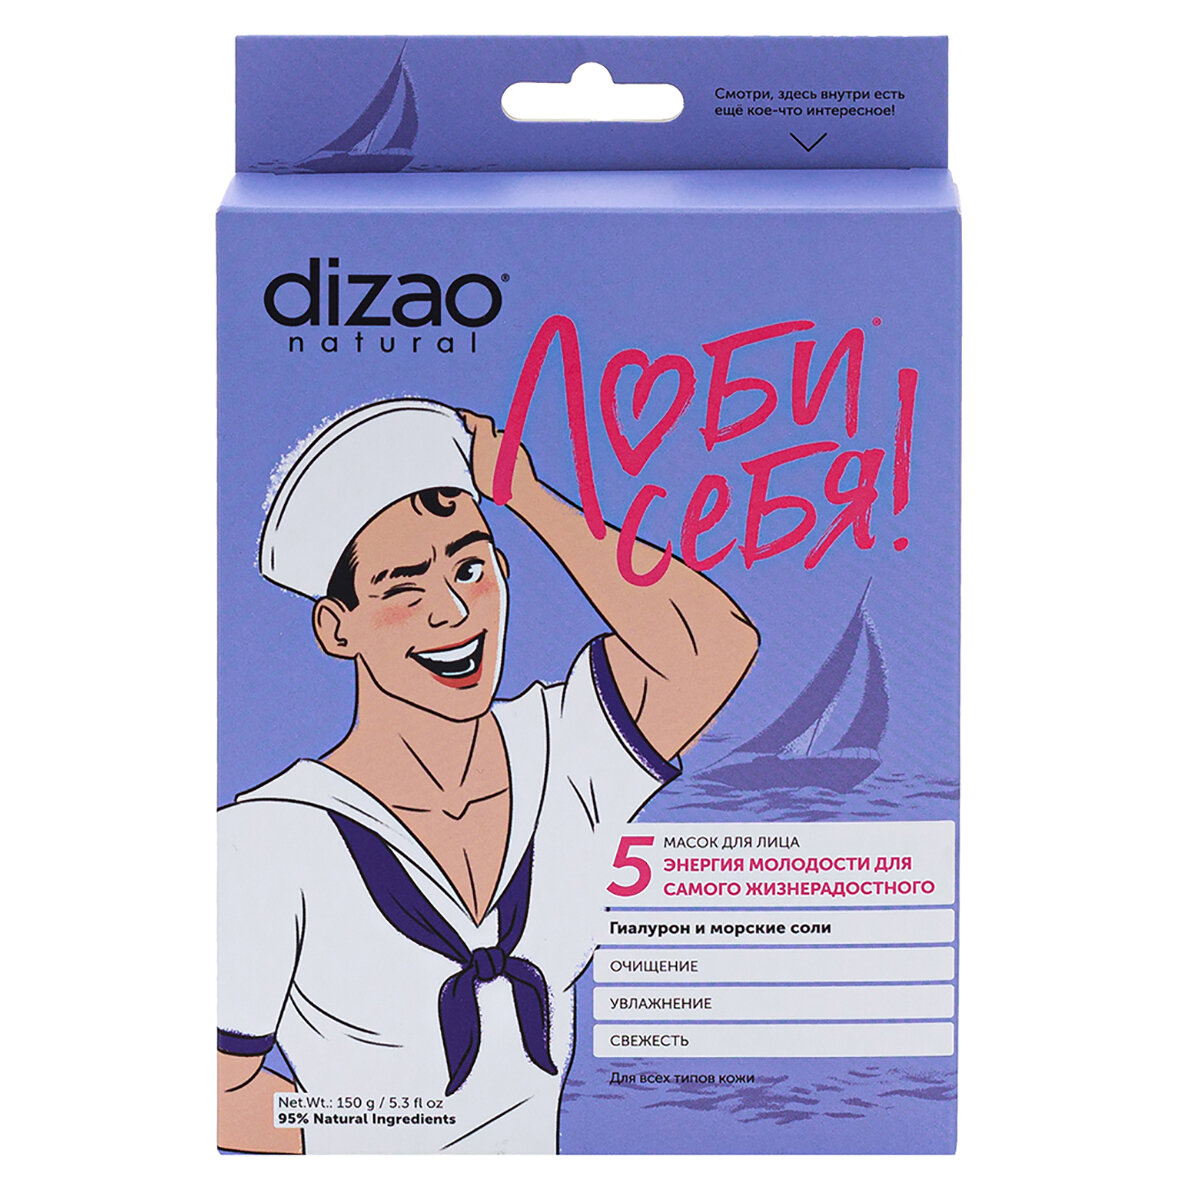 DIZAO Маска для лица Для самого жизнерадостного Гиалурон и морские соли 5 шт Dizao